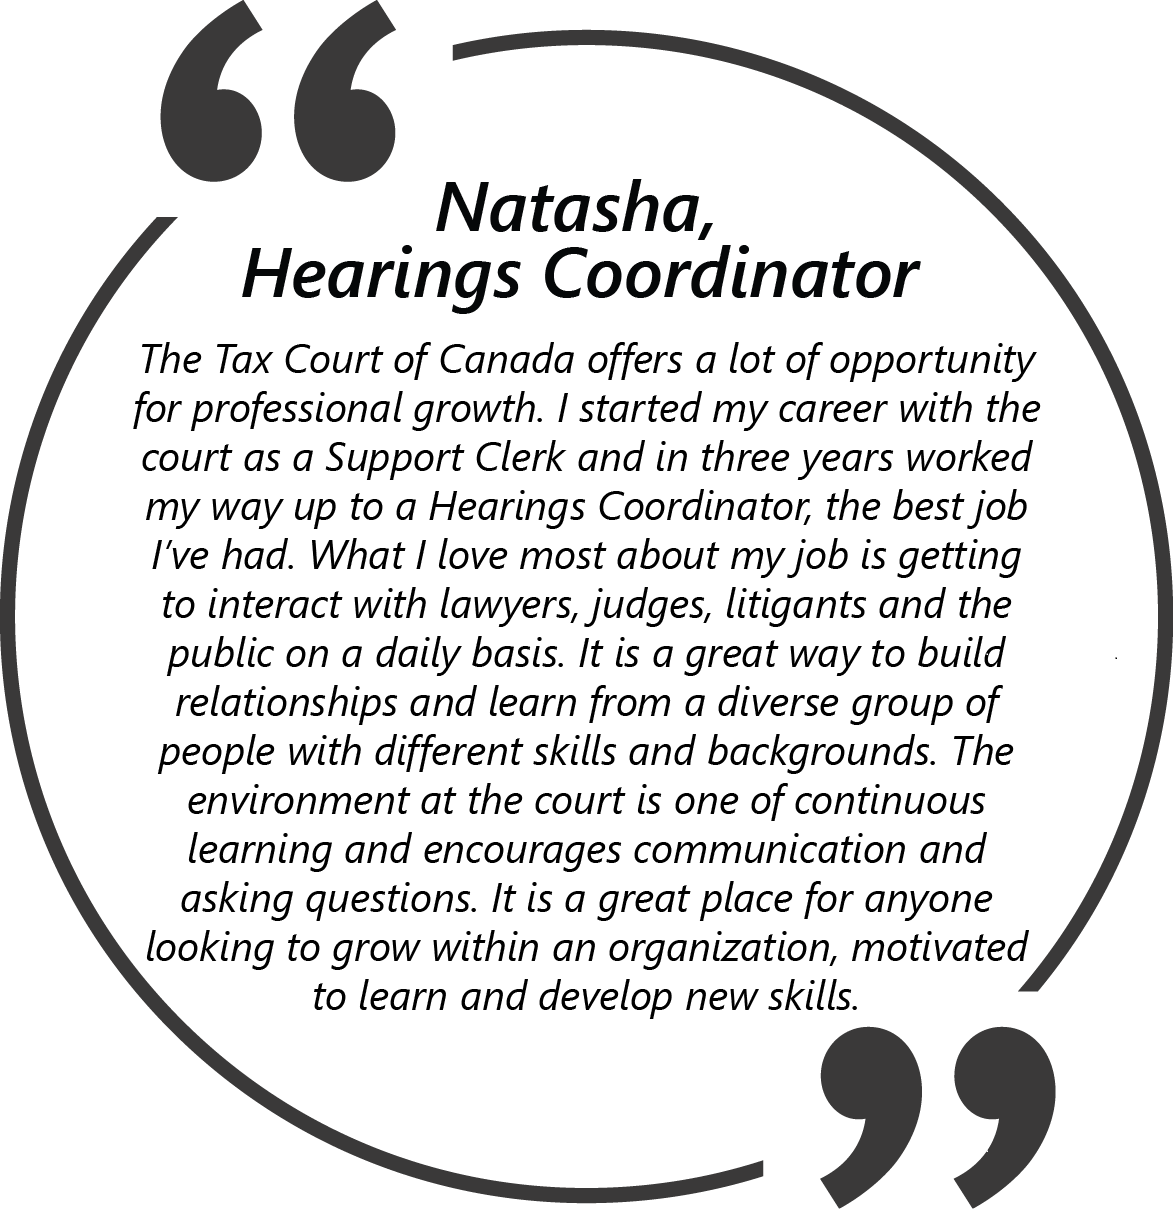 Quote from Natasha, Hearings Coordinator